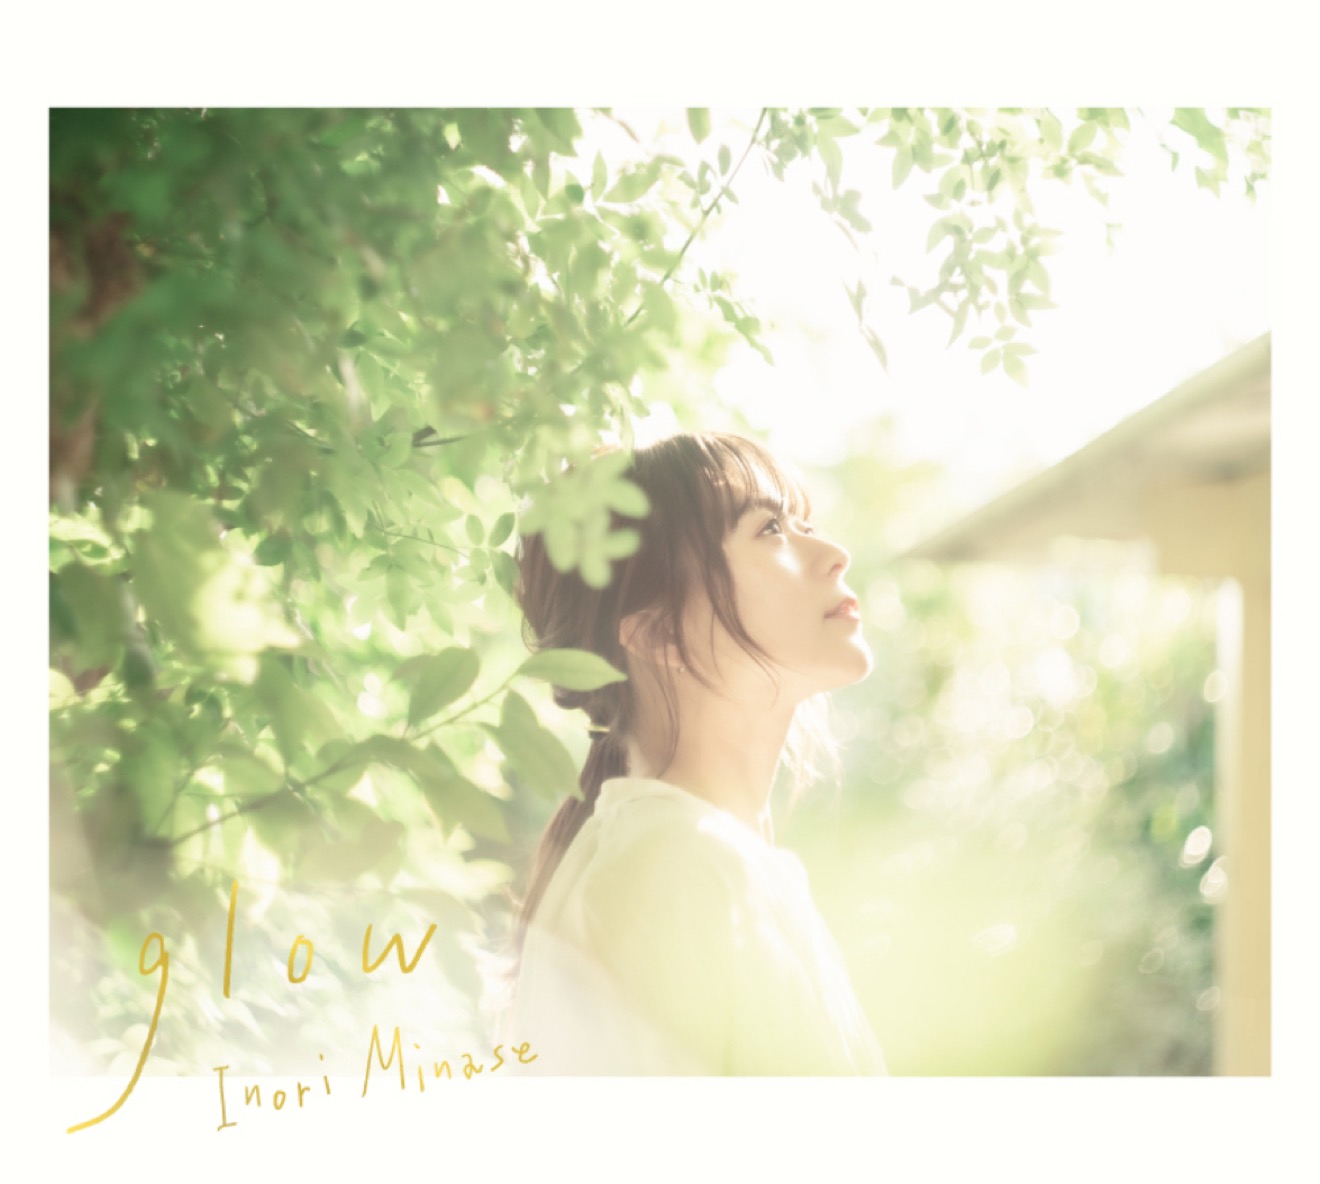 [Камбэк] Инори Минасэ альбом "glow": музыкальный клип